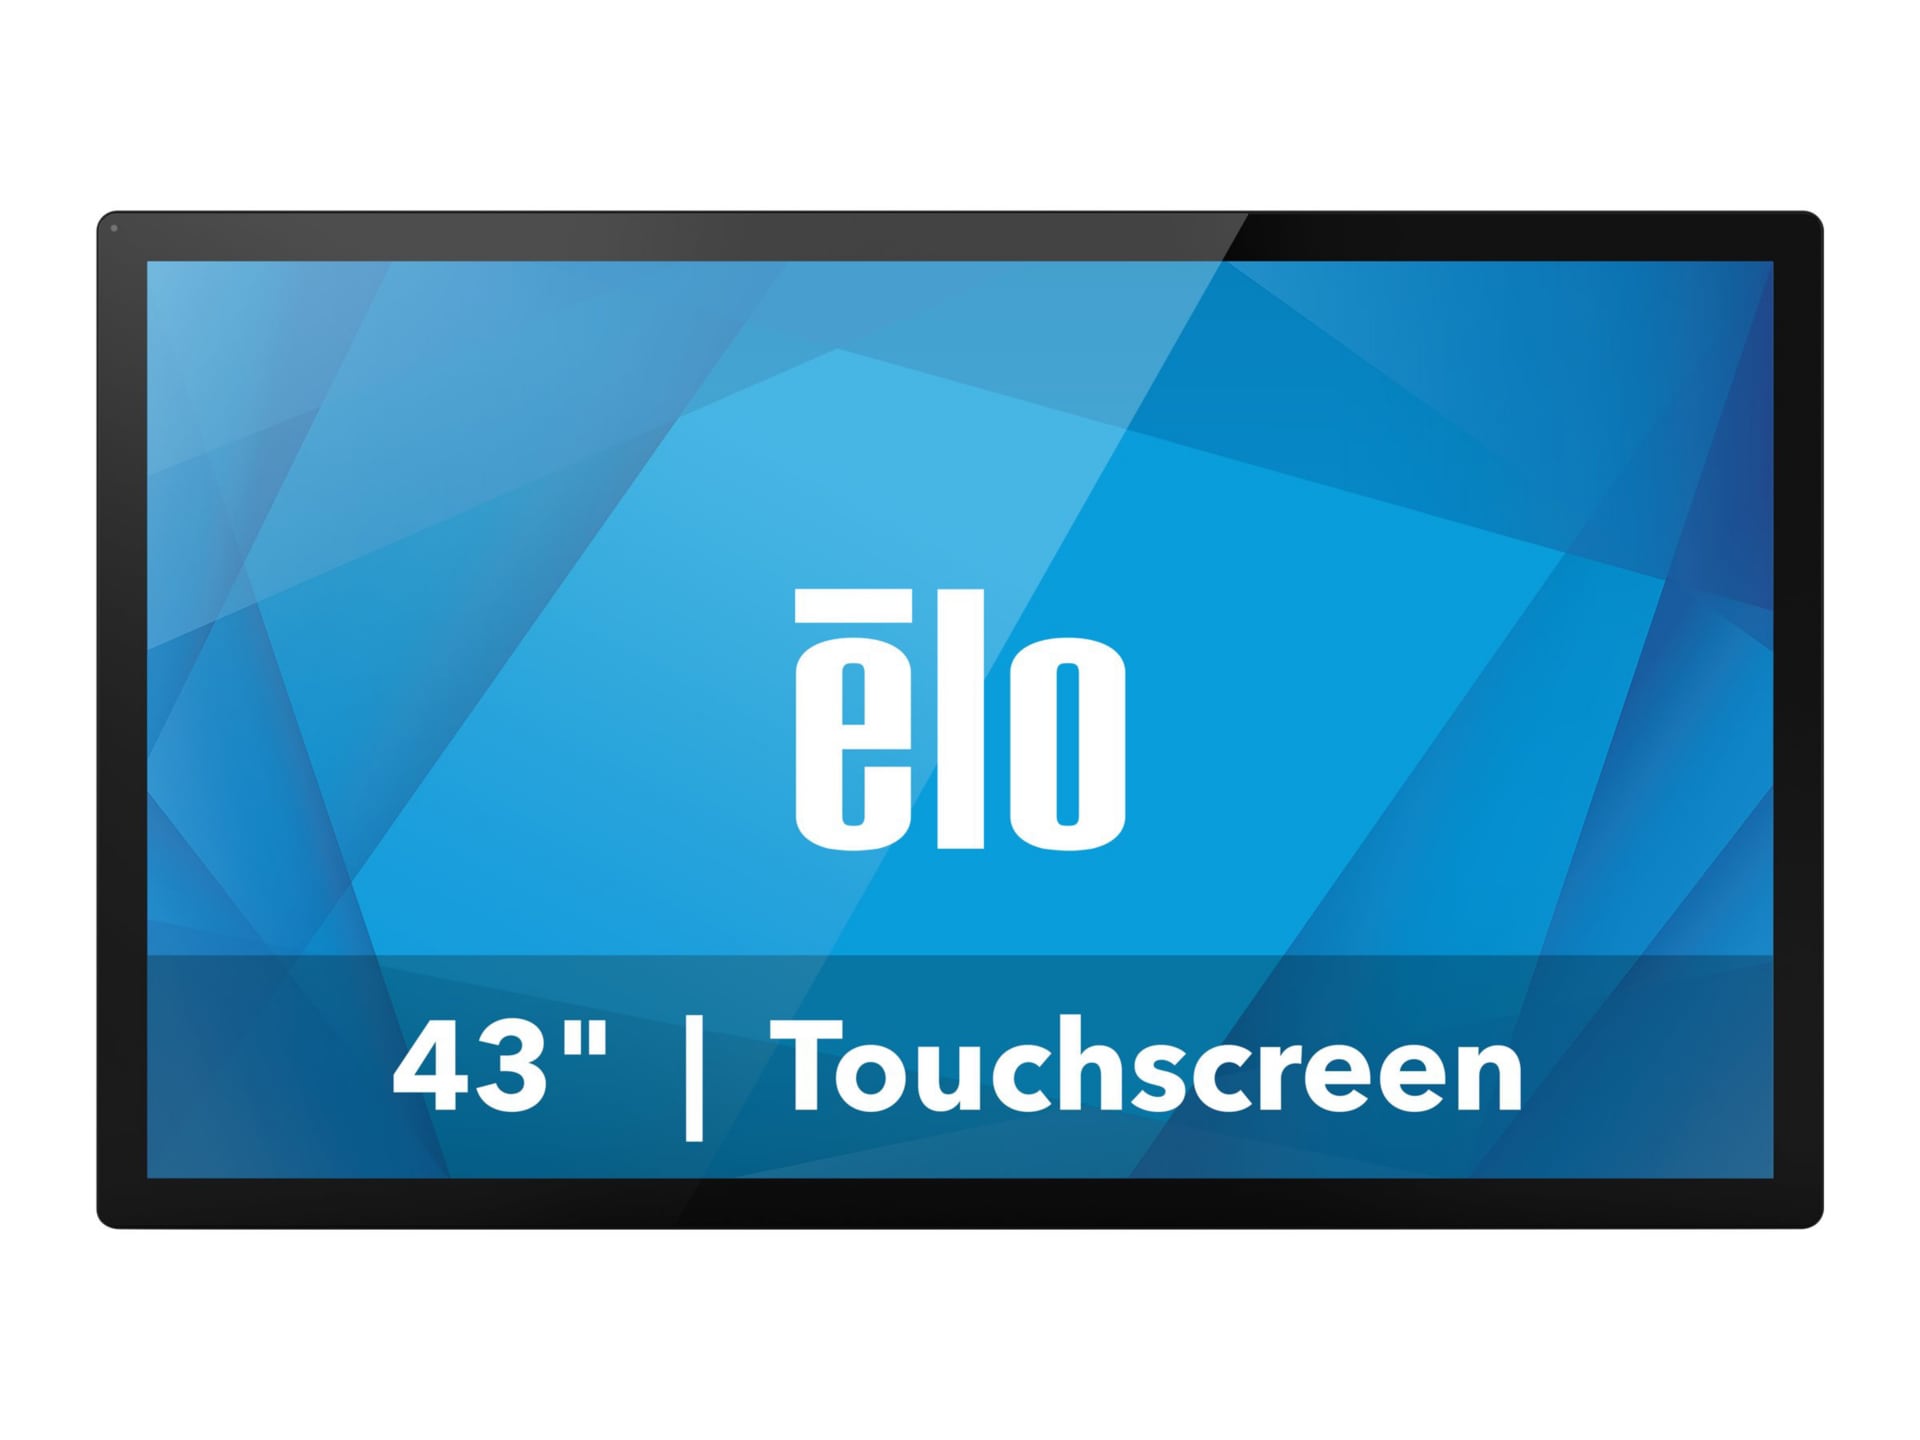 Elo 4363L - LED monitor - Full HD (1080p) - 43"